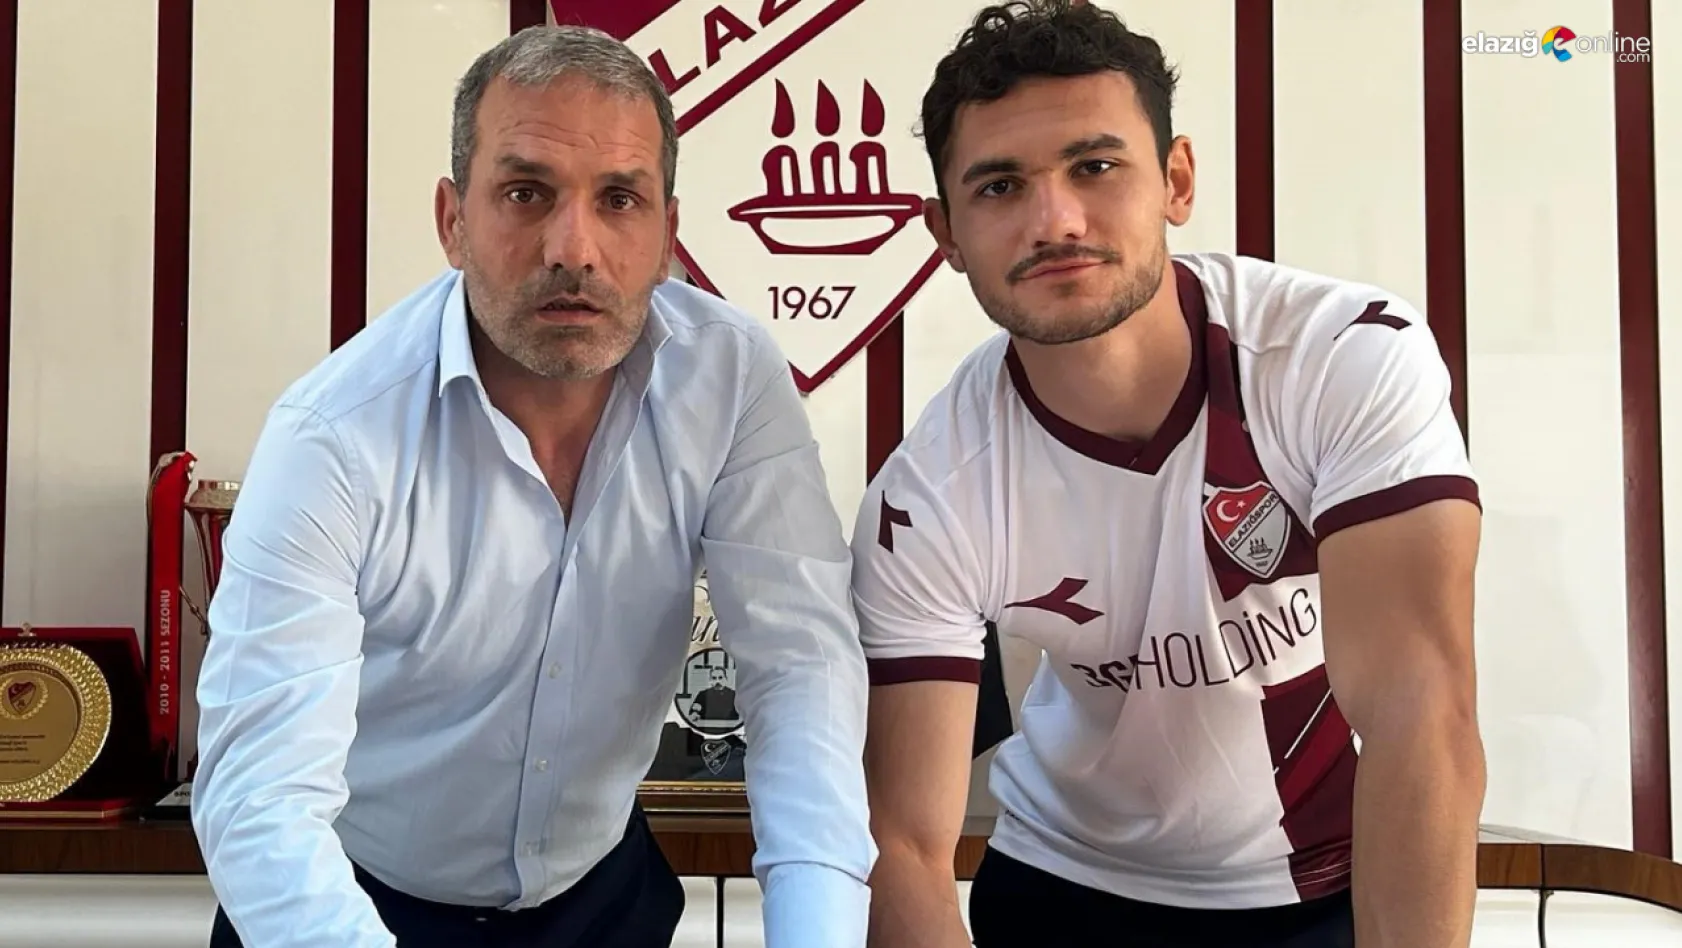 Elazığspor'dan imza şov! Genç oyuncular ile sözleşme imzalandı